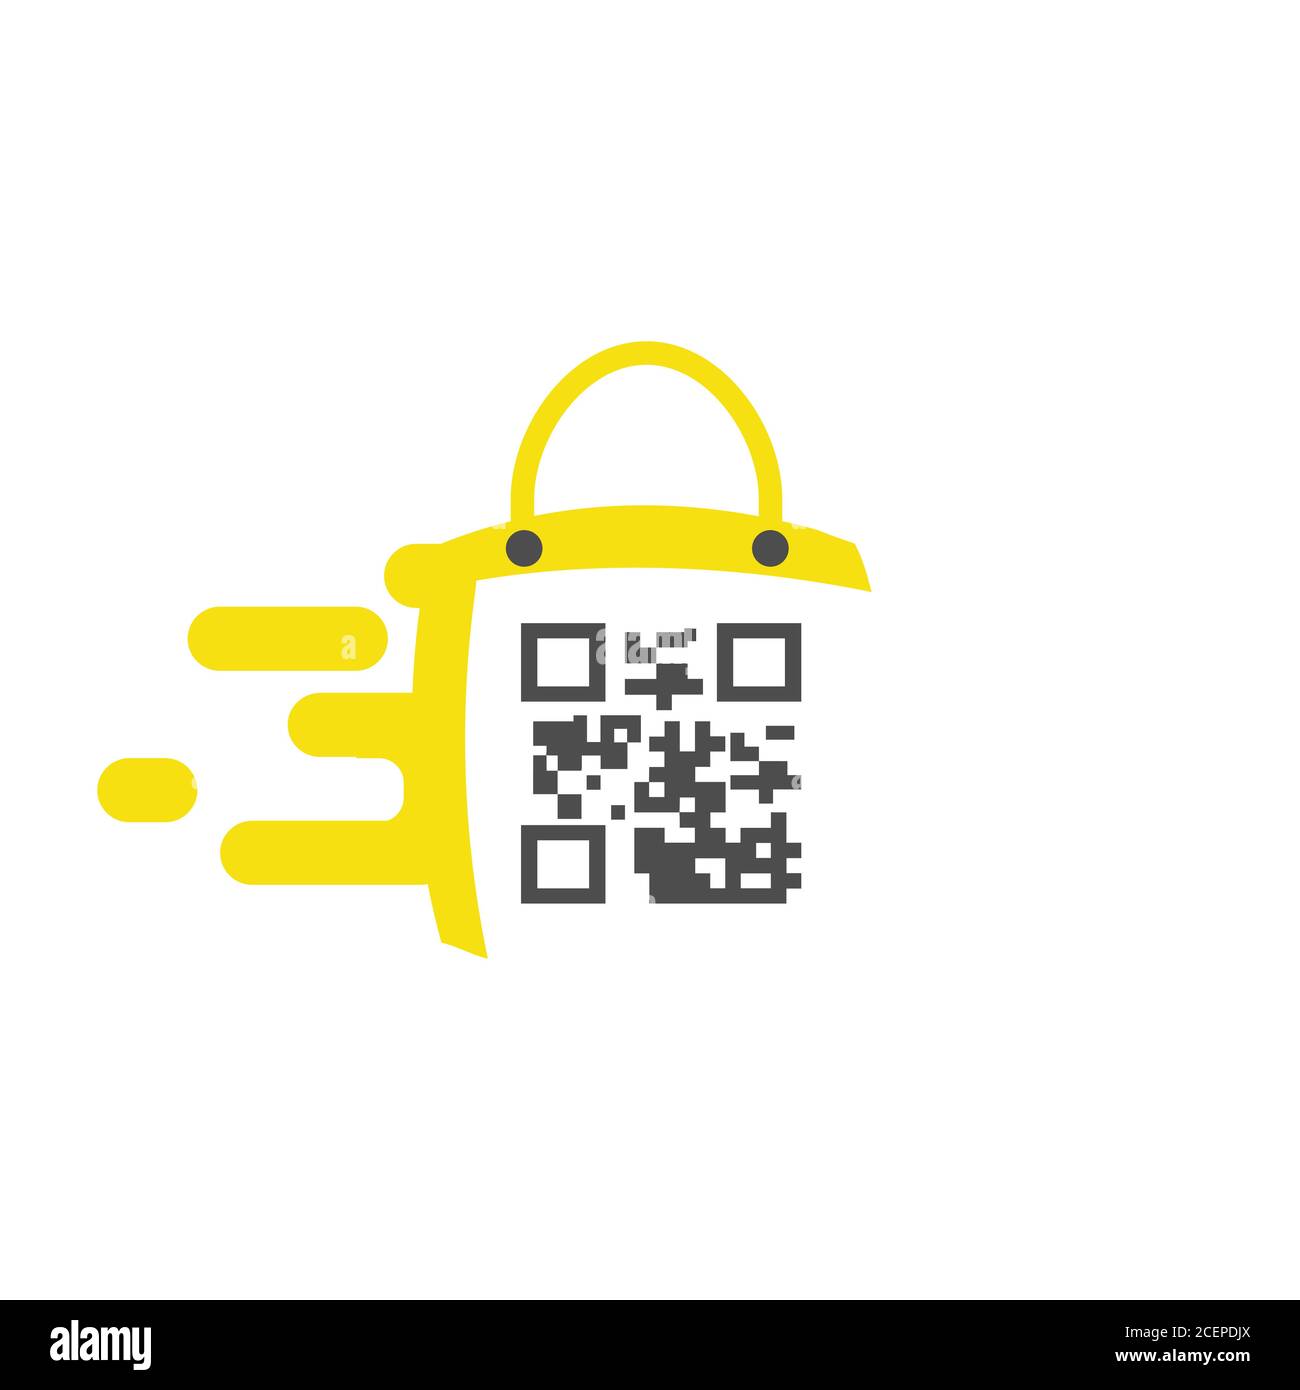 Simbolo dell'icona della borsa per la tua migliore azienda con codice a barre. Icona della borsa Fast Shopping in stile trendy. Illustrazione vettoriale EPS.8 EPS.10 Illustrazione Vettoriale